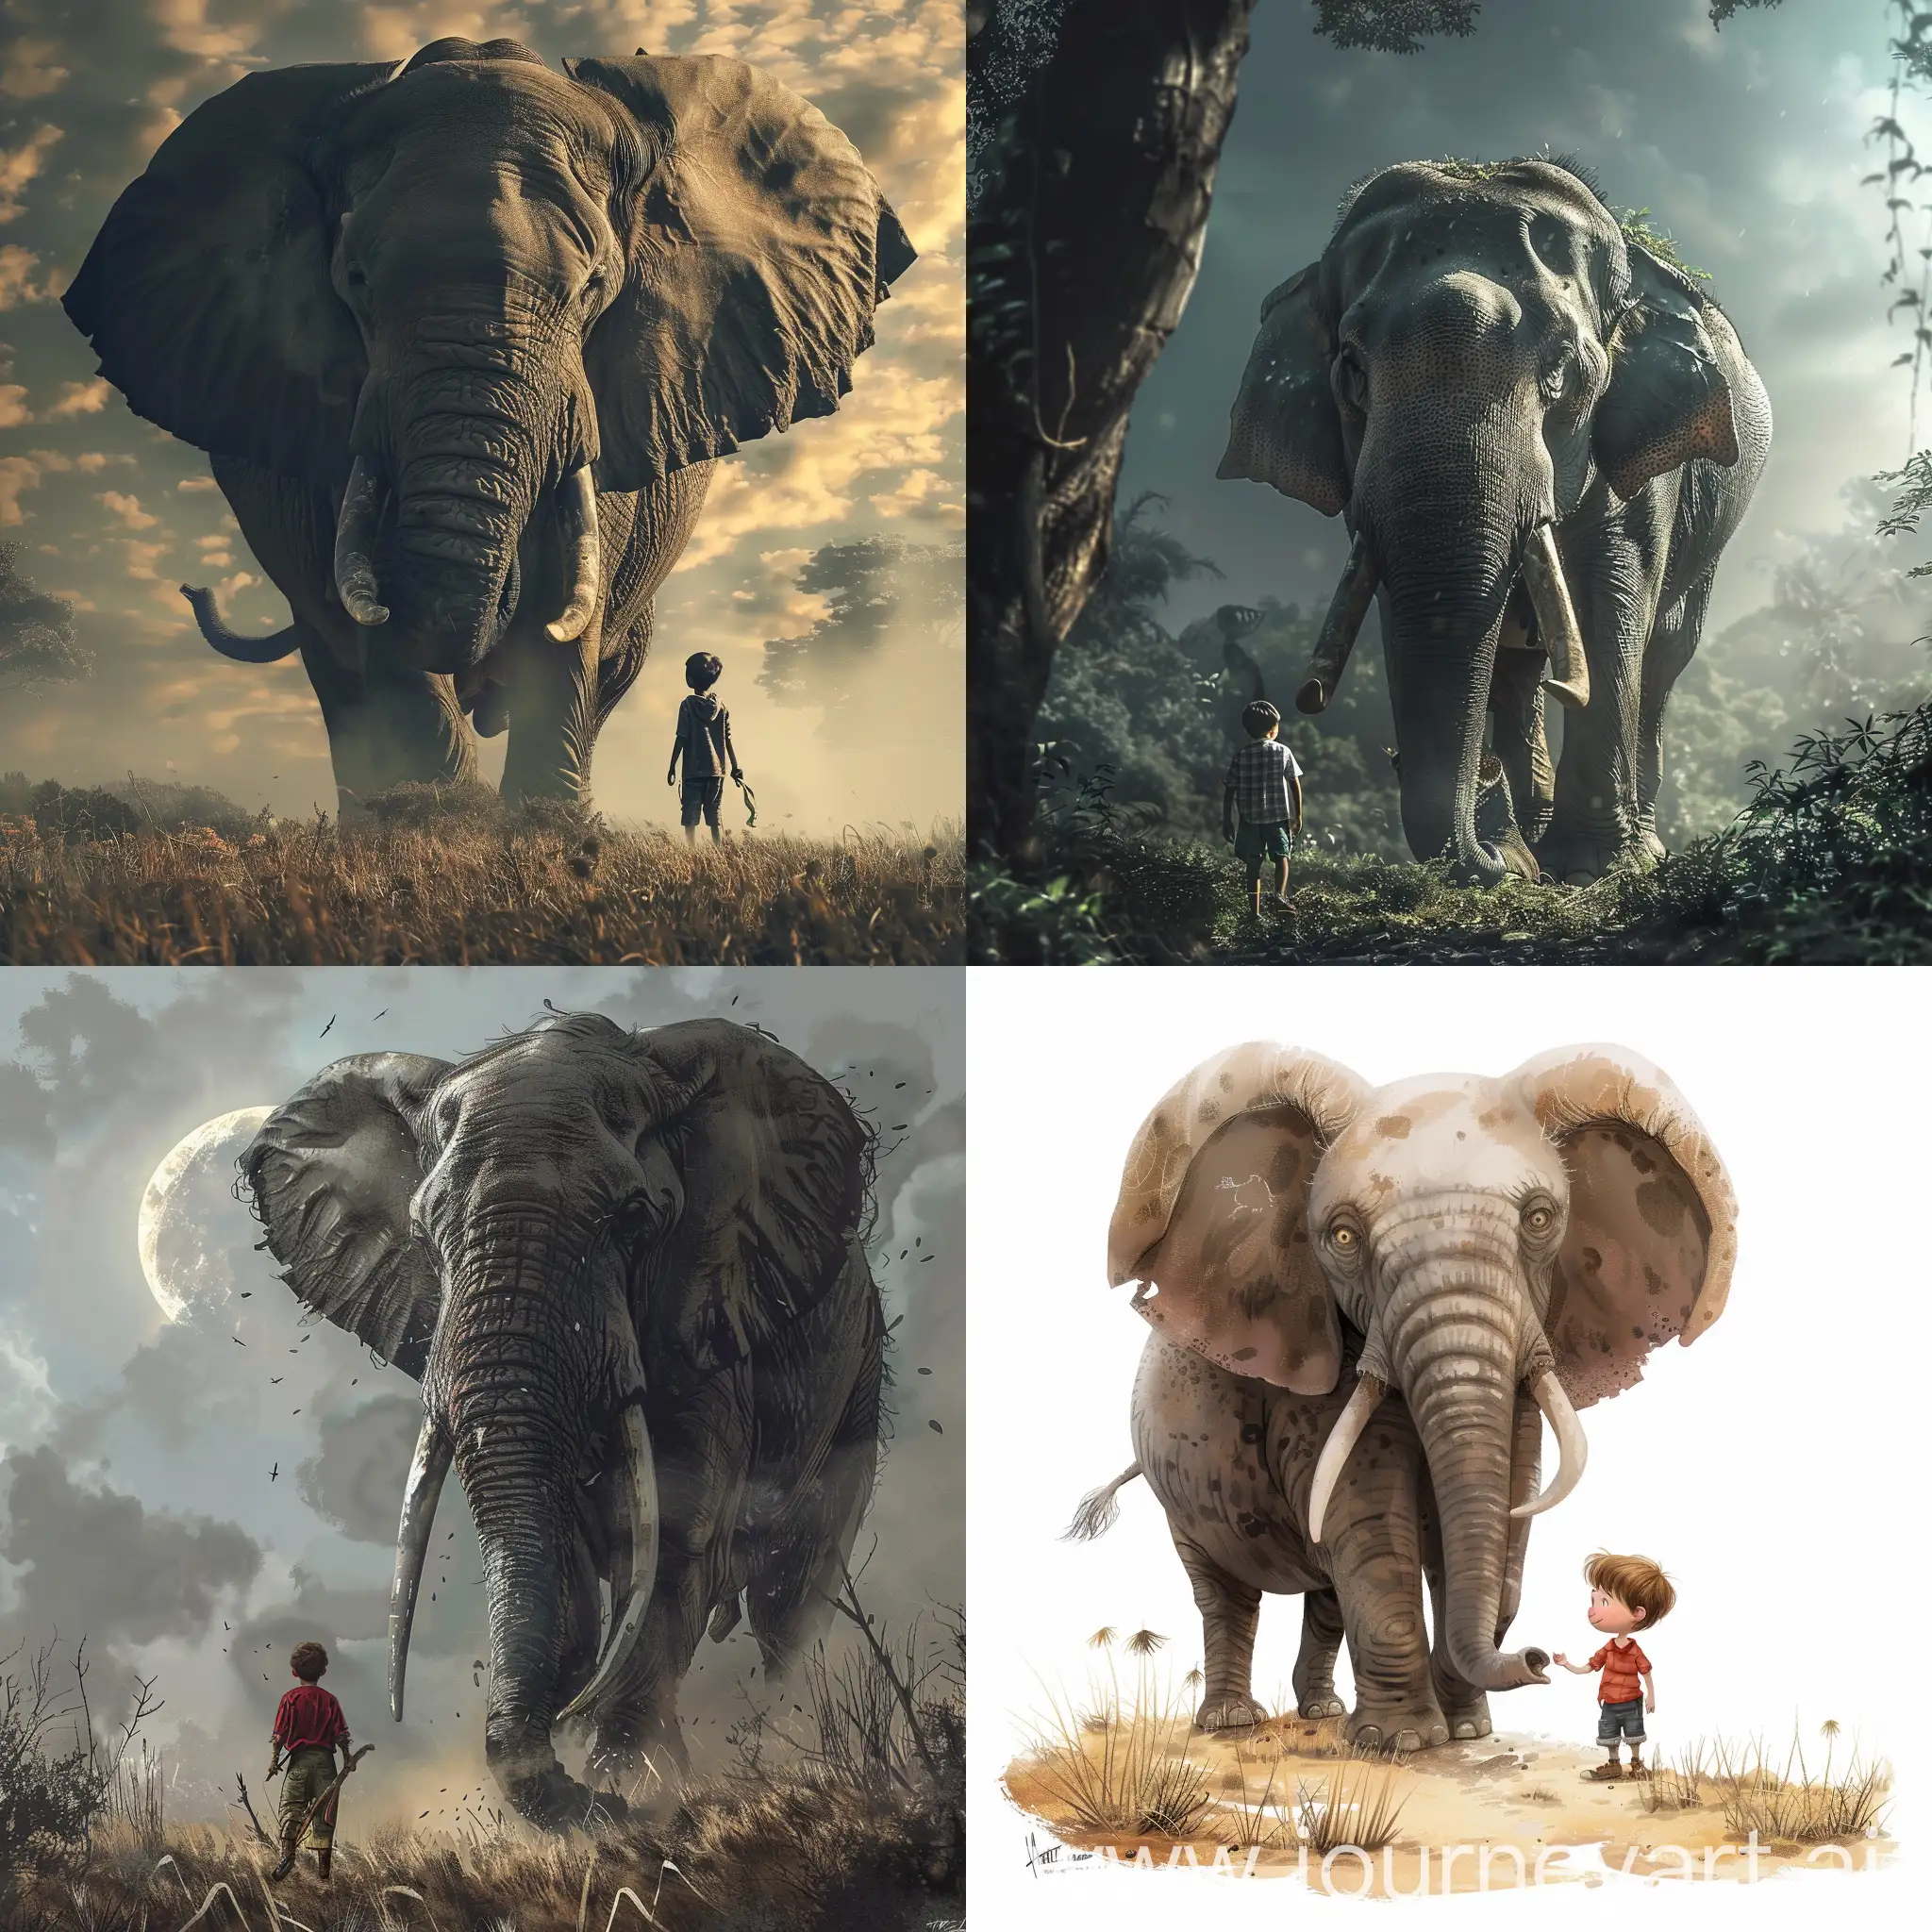 A boy Hunter and a giant elephant